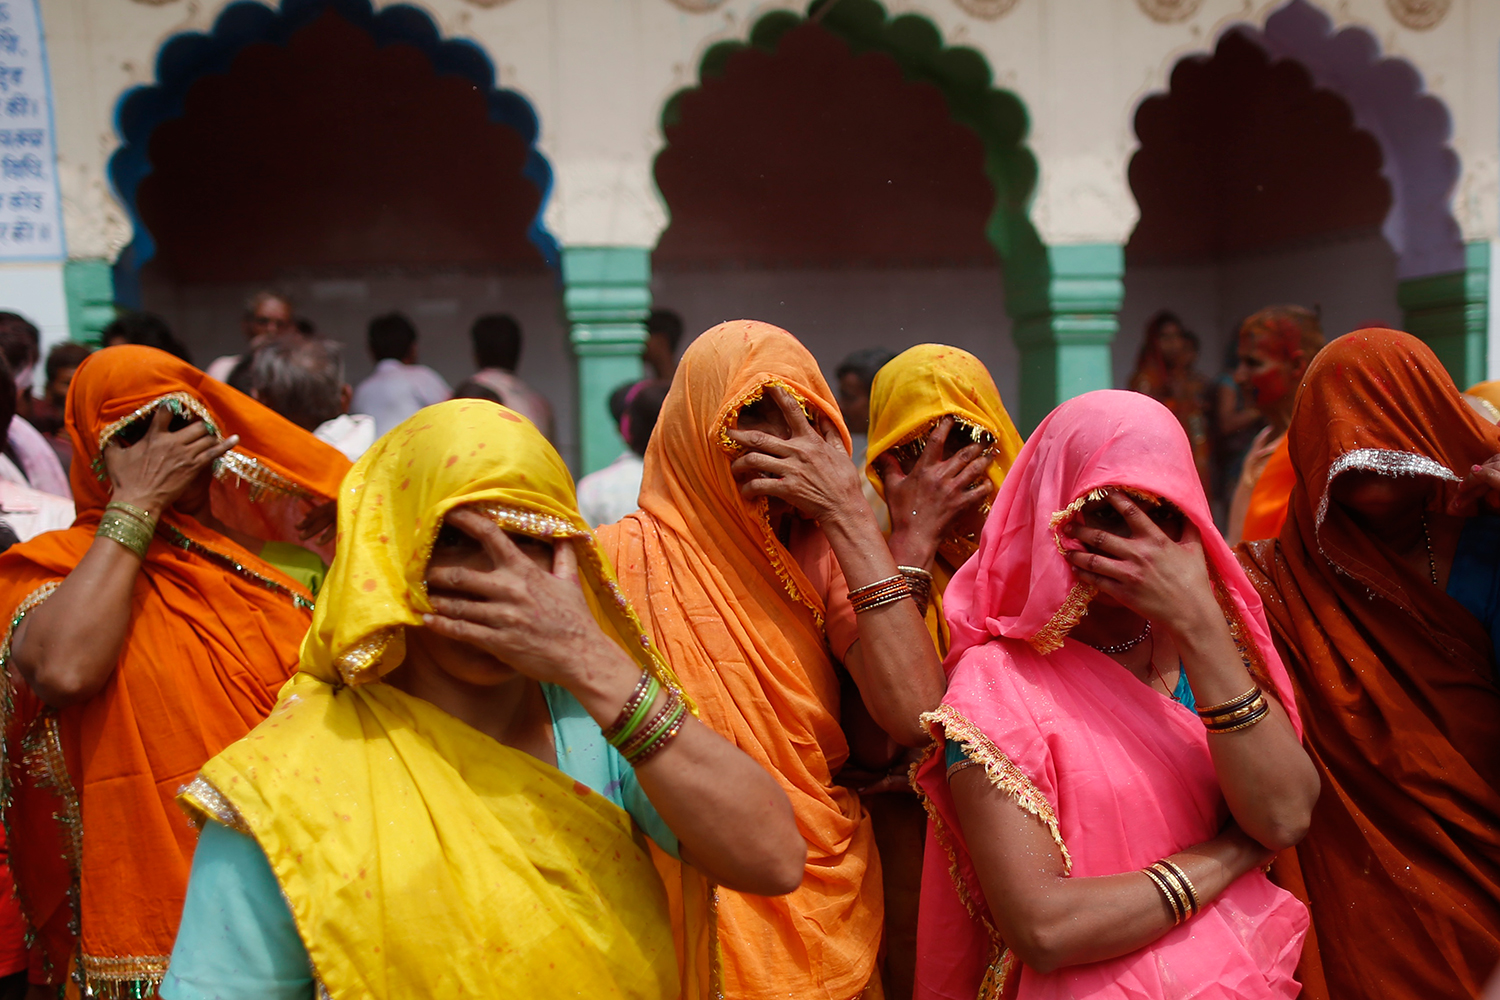 Las turistas deberán llevar sari para entrar al templo hinduista de Varanasi